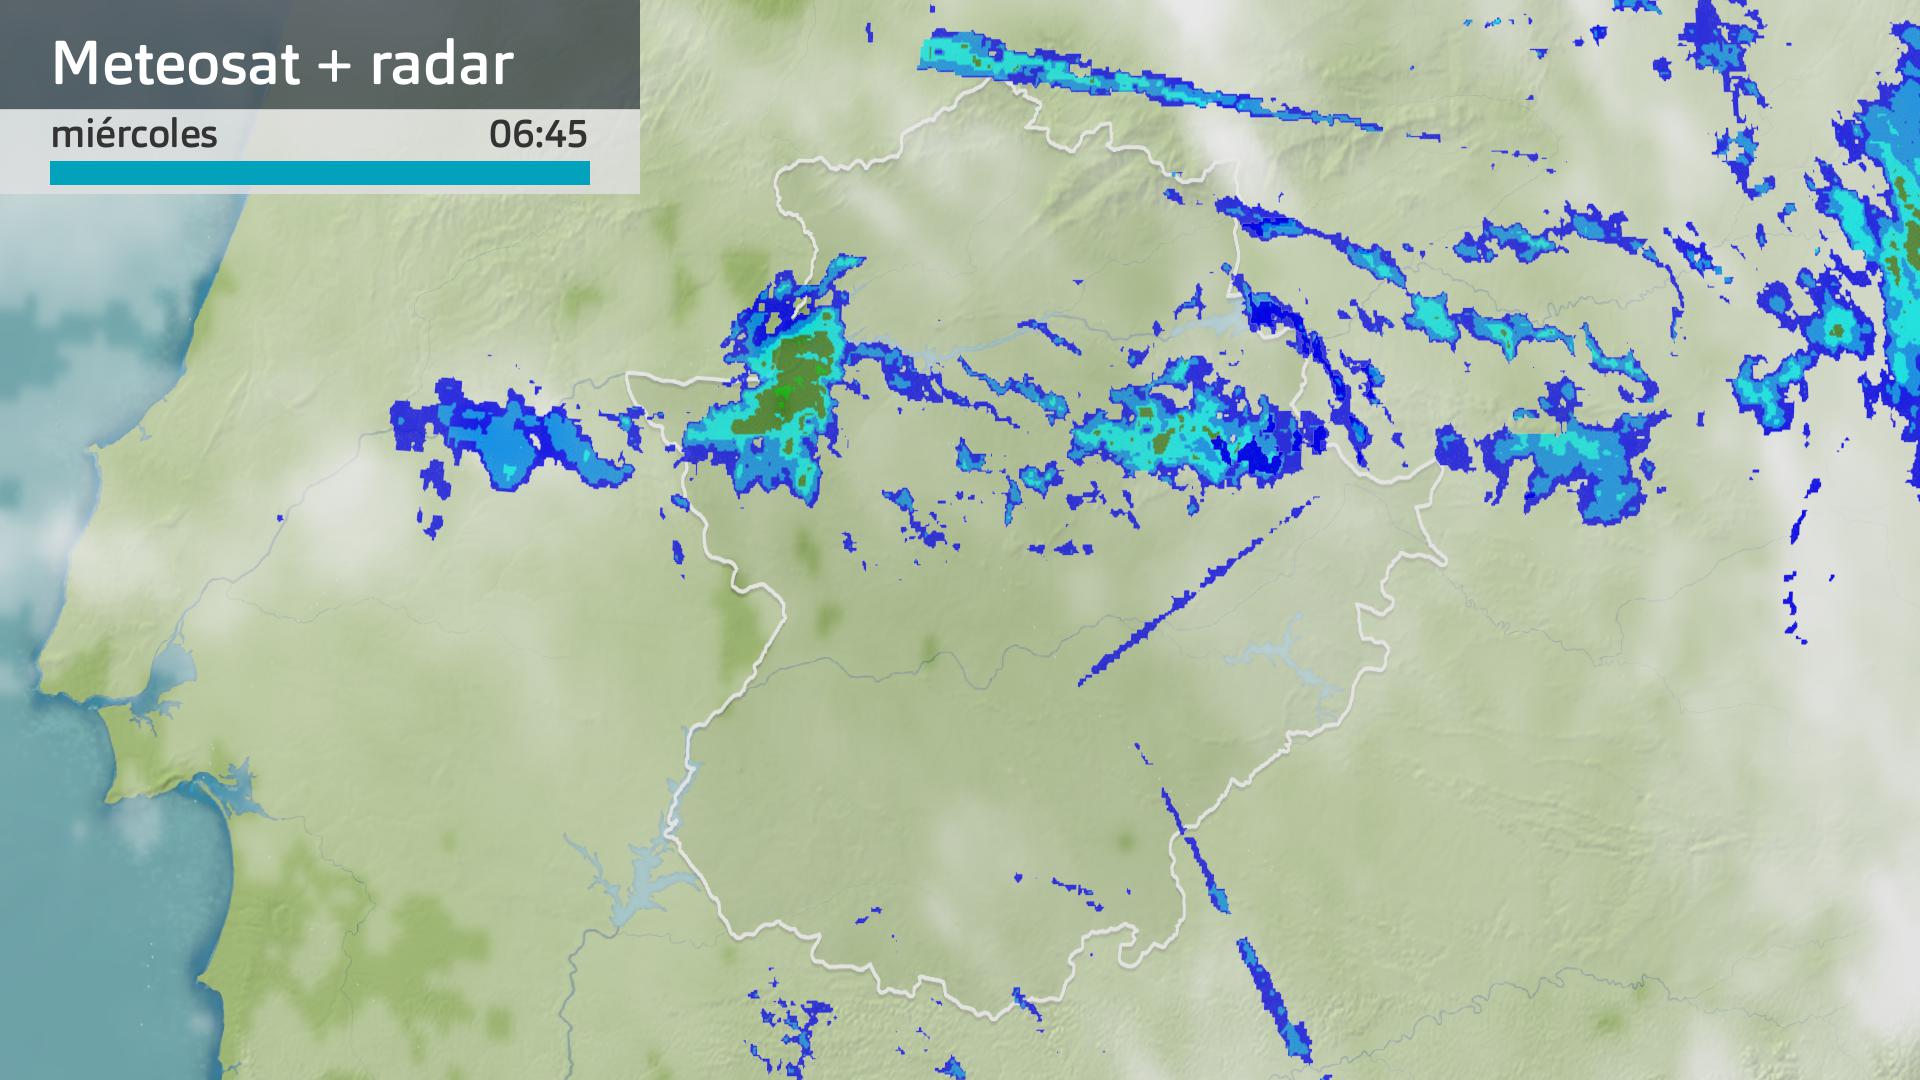 Imagen del Meteosat + radar meteorológico miércoles 27 de marzo 6:45 h.